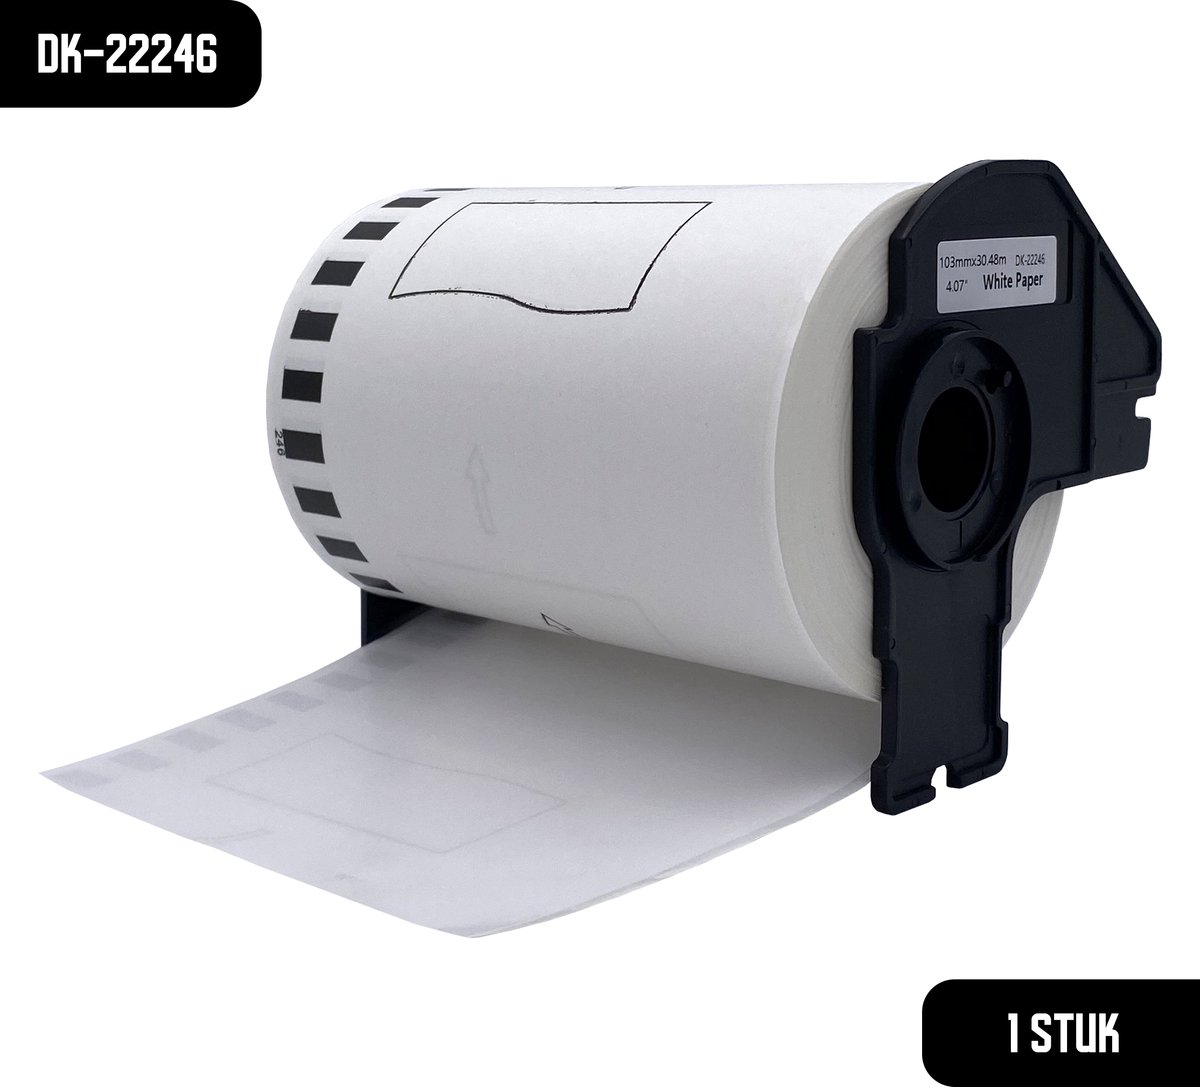 DULA Brother Compatible DK-22246 - Doorlopende labelrol - 1 rol - 103 mm x 30,48 m - Zwart op wit - Papier